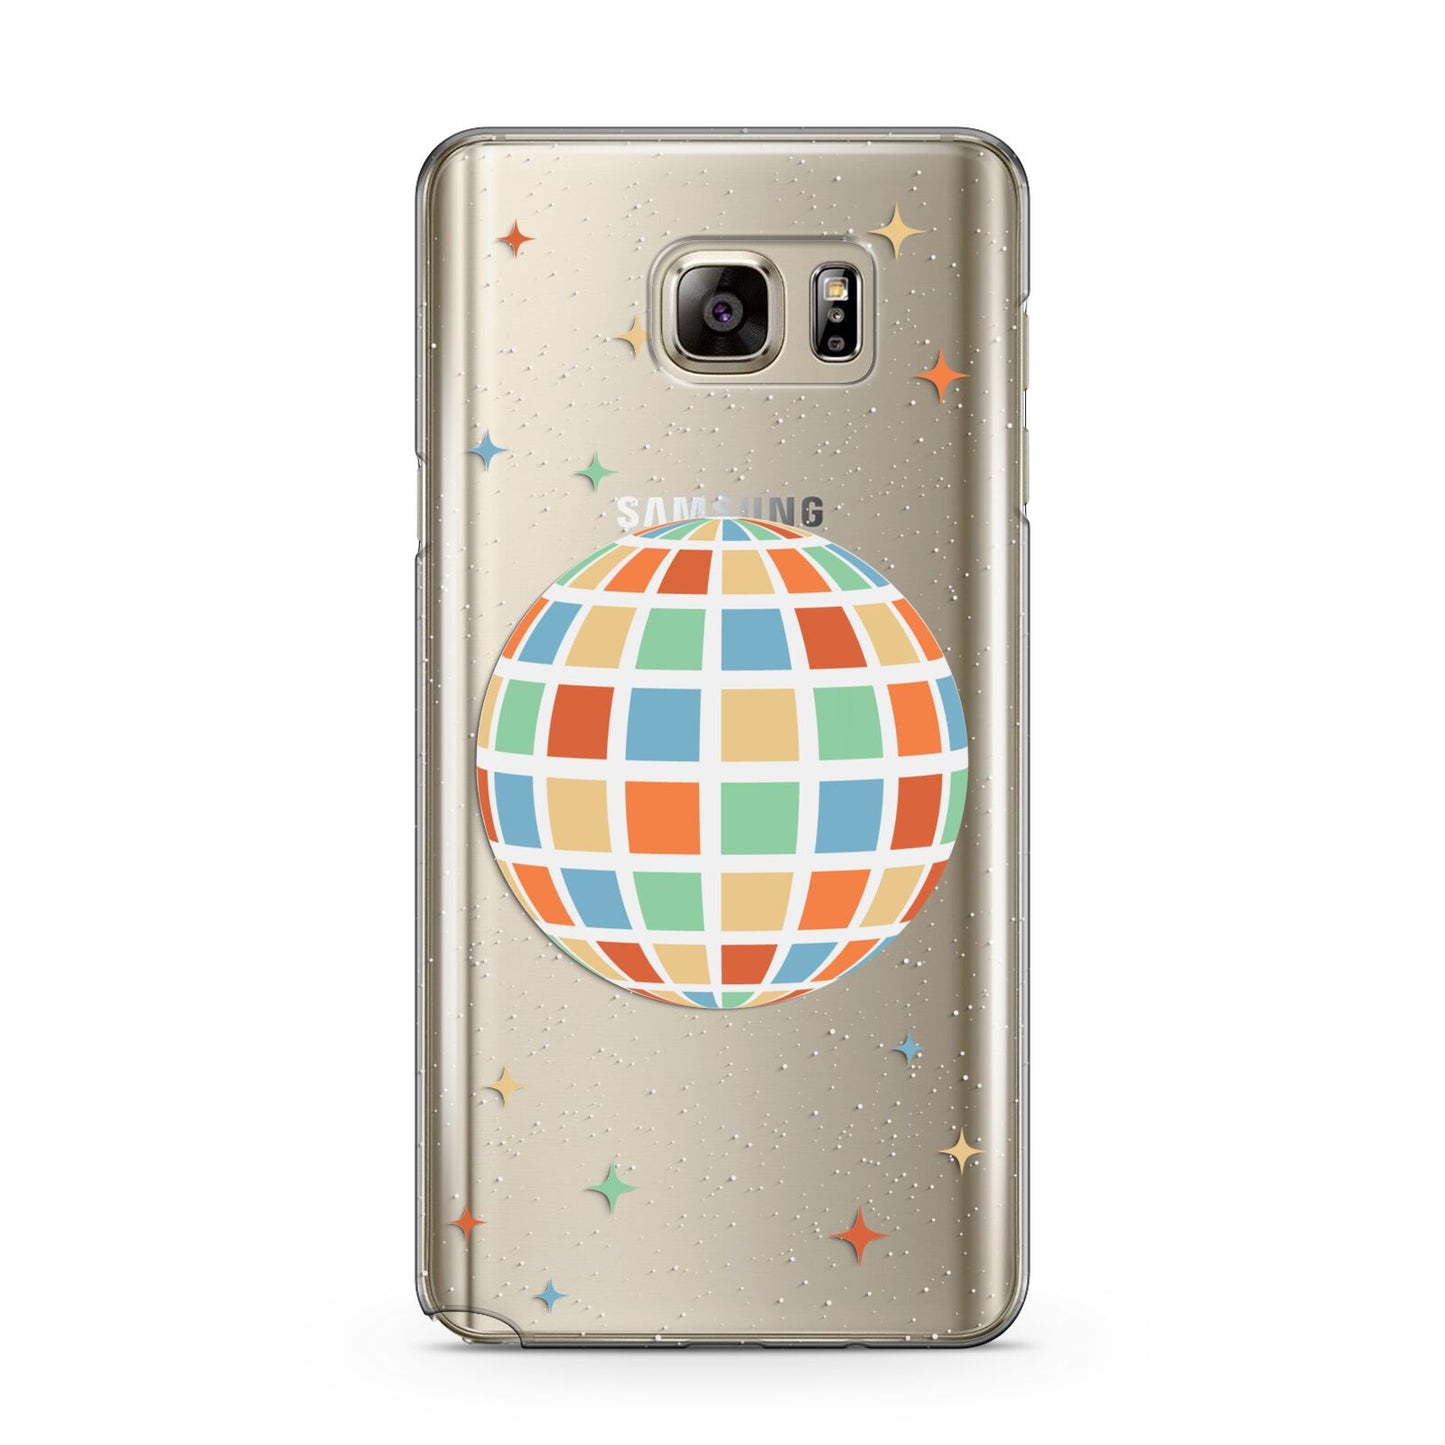 Disco Ball Samsung Galaxy Note 5 Case